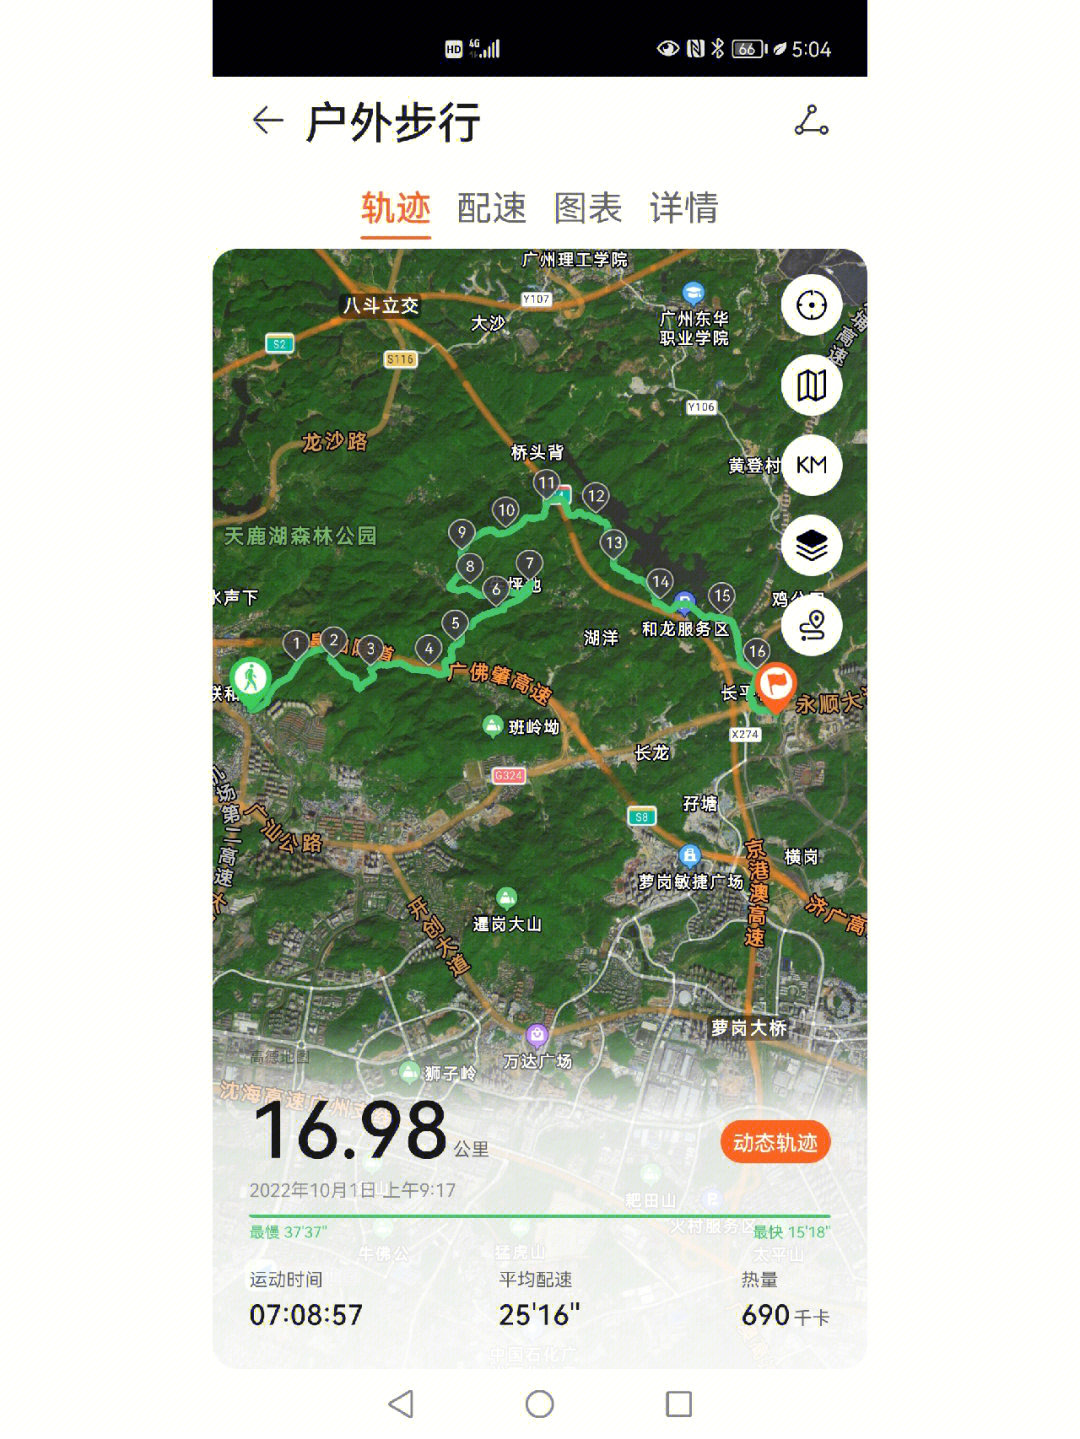 李 10月1日挑战牛木徒步线牛木线,位于广州市黄埔区